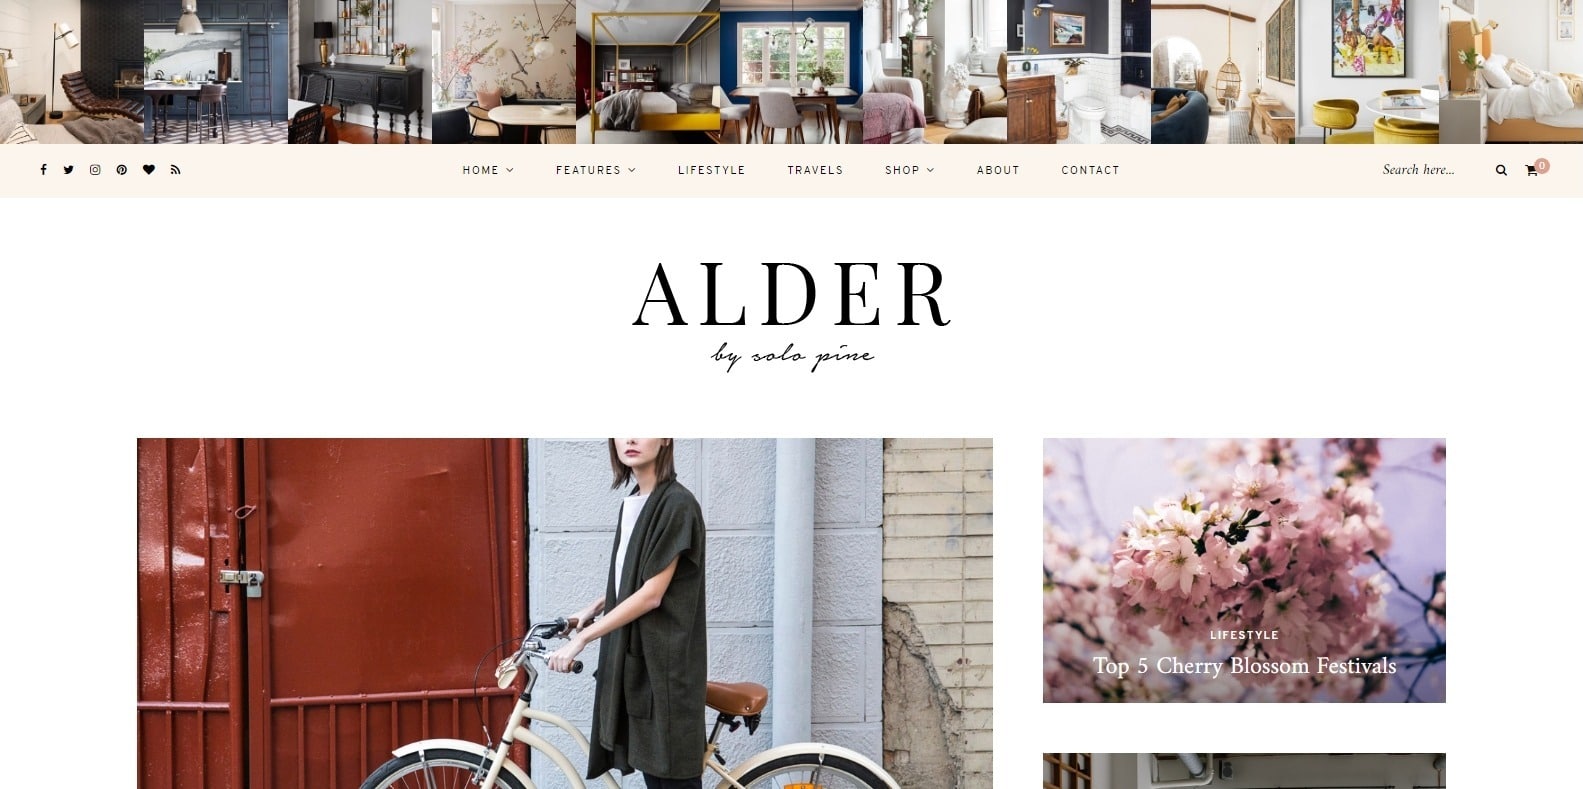 alder-food-blog-website-template